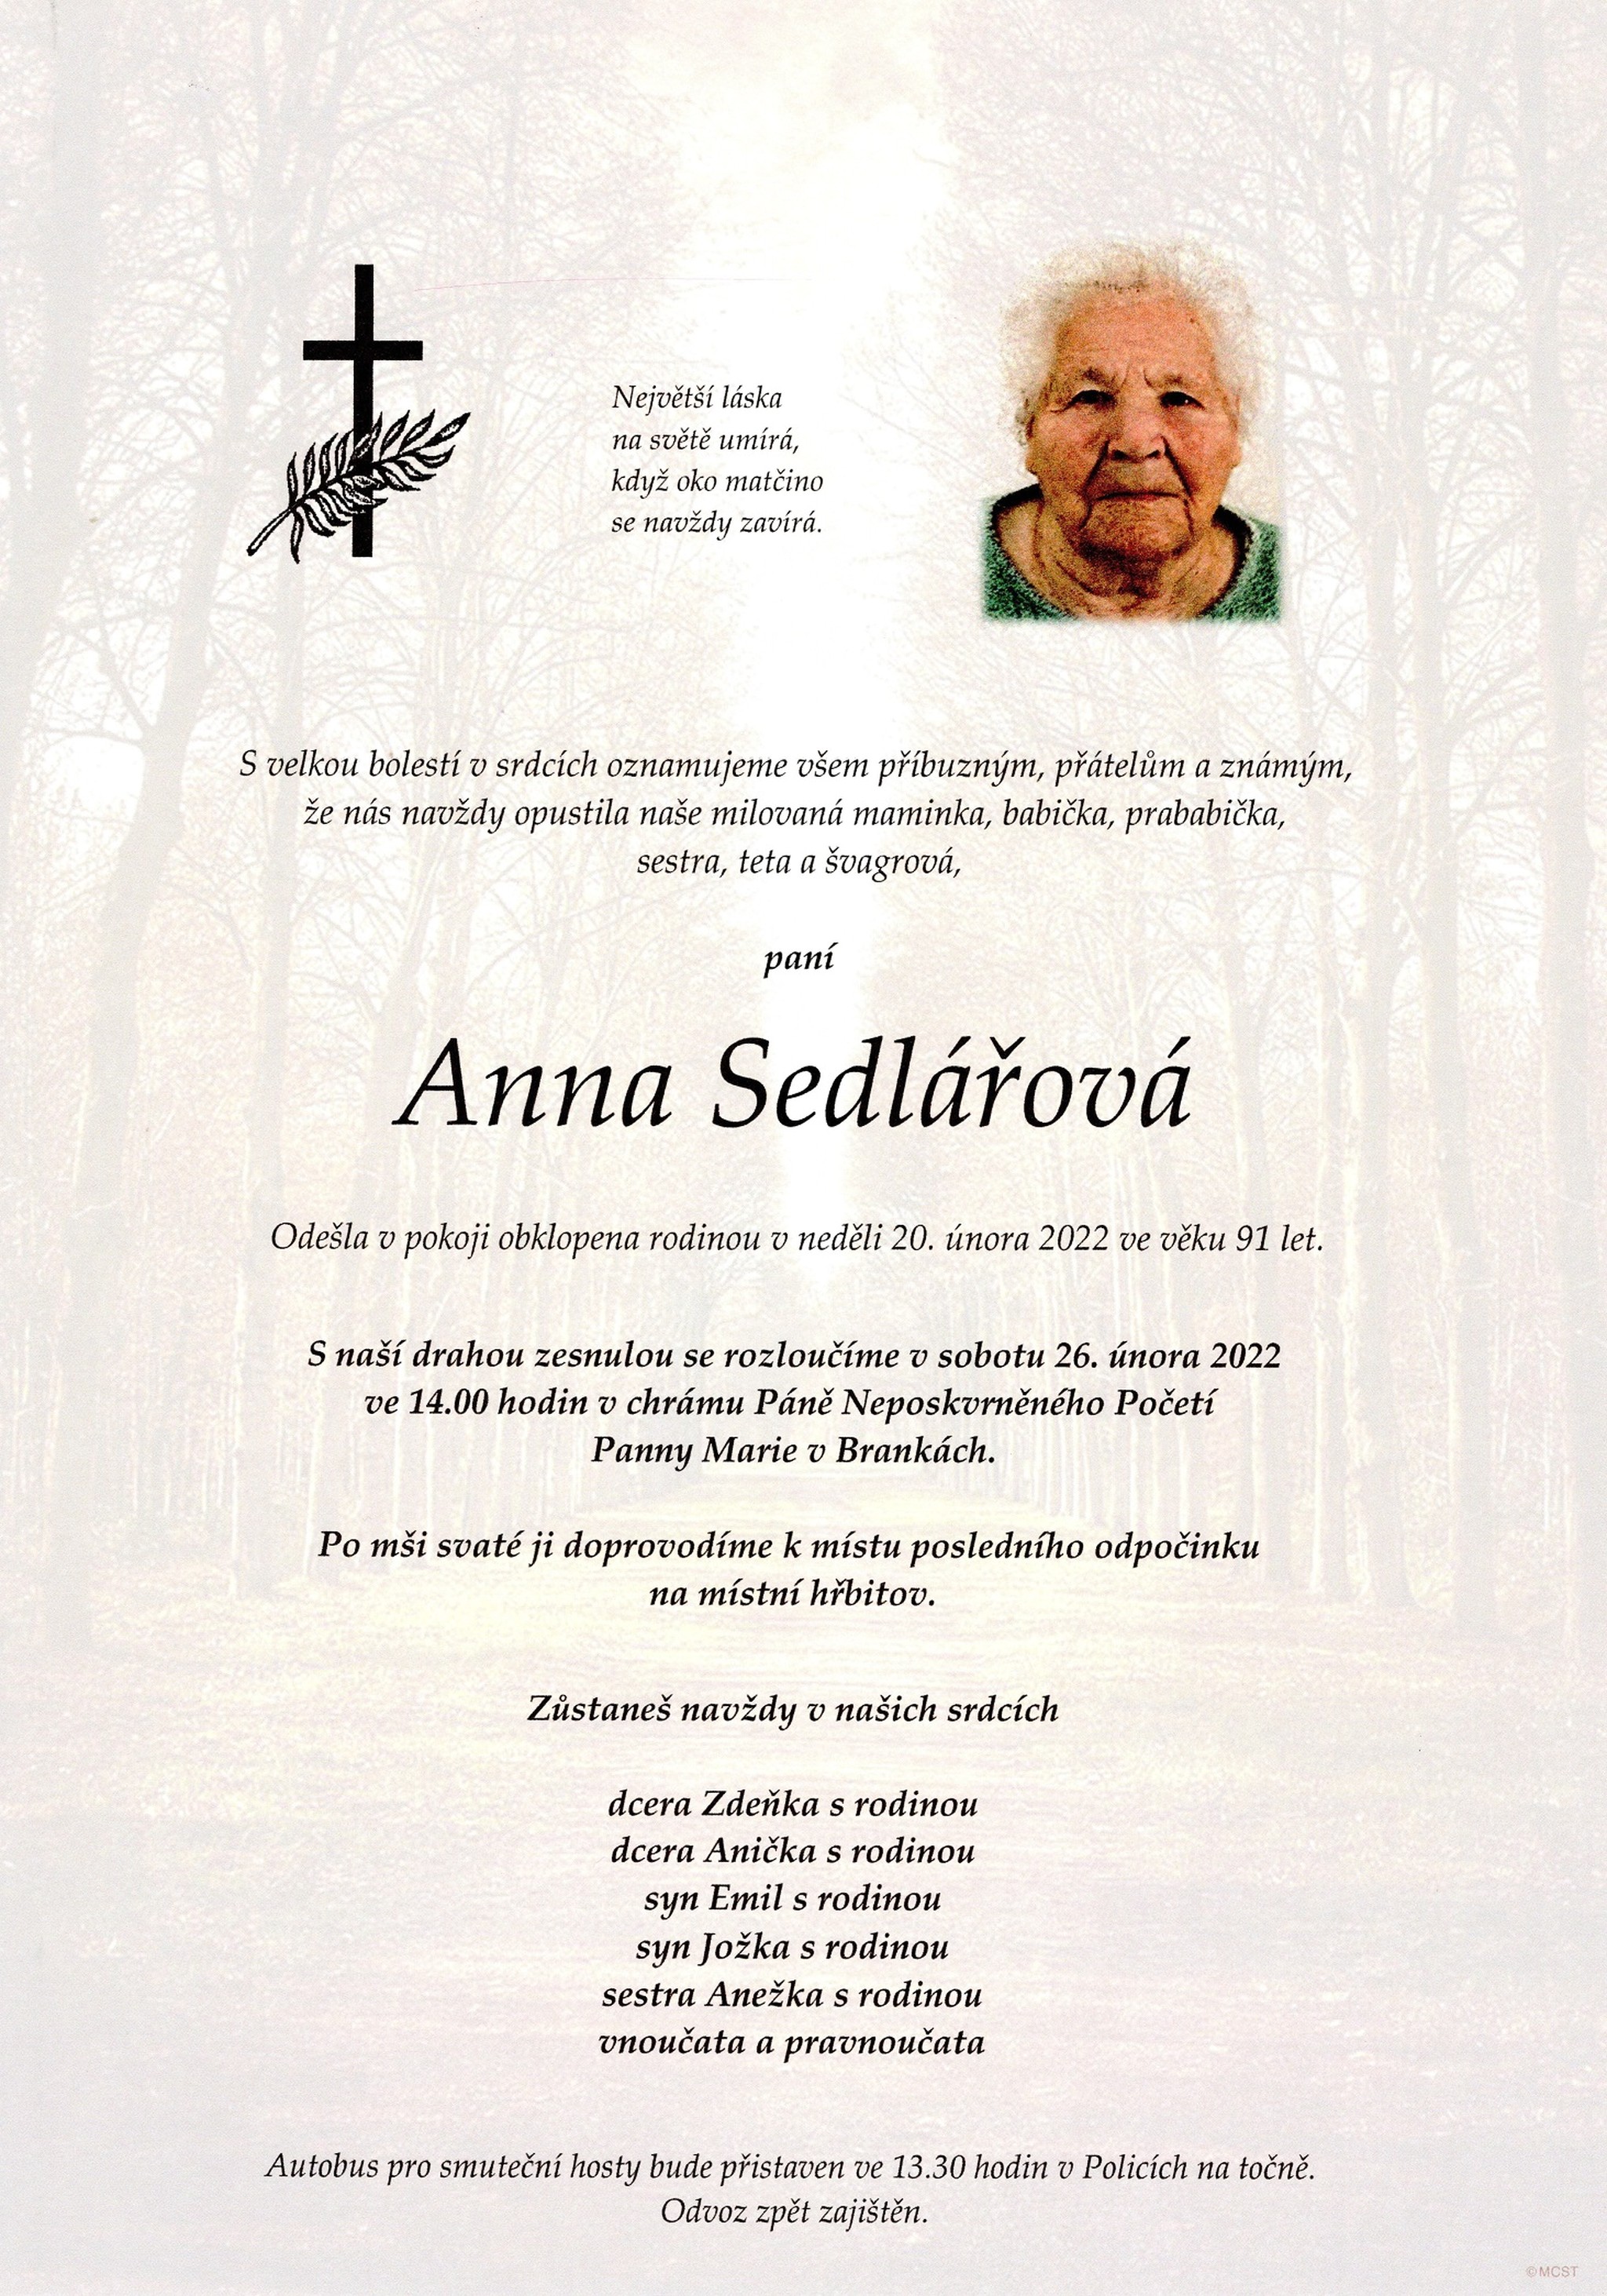 Anna Sedlářová